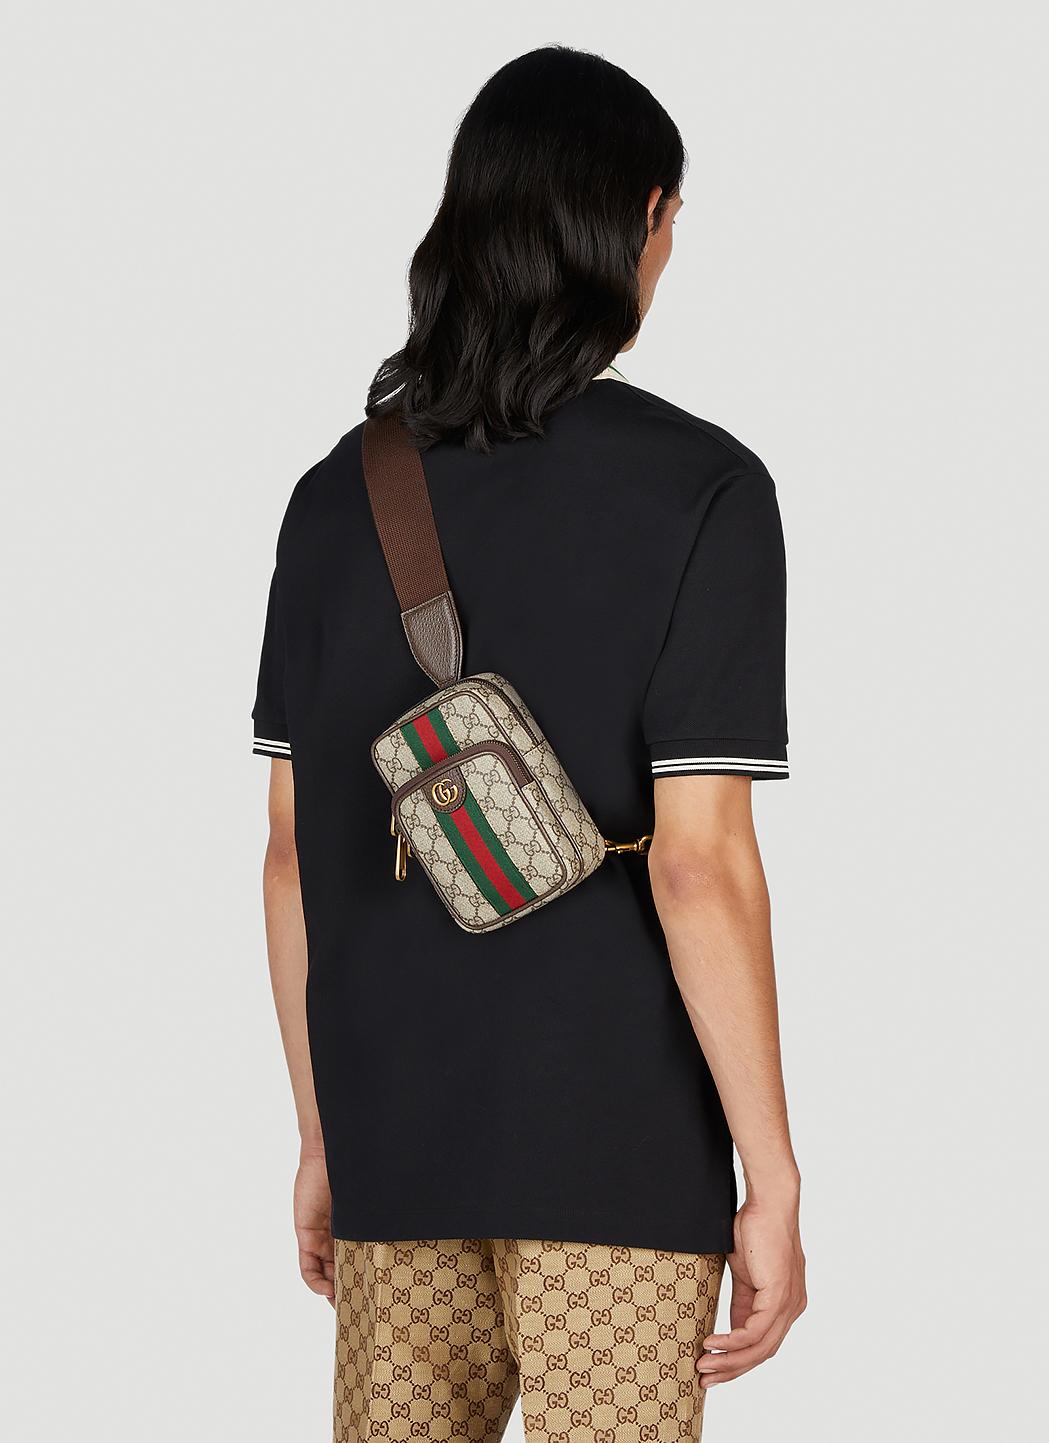 Gucci Ophidia Gg Medium Messenger Bag, $980, farfetch.com